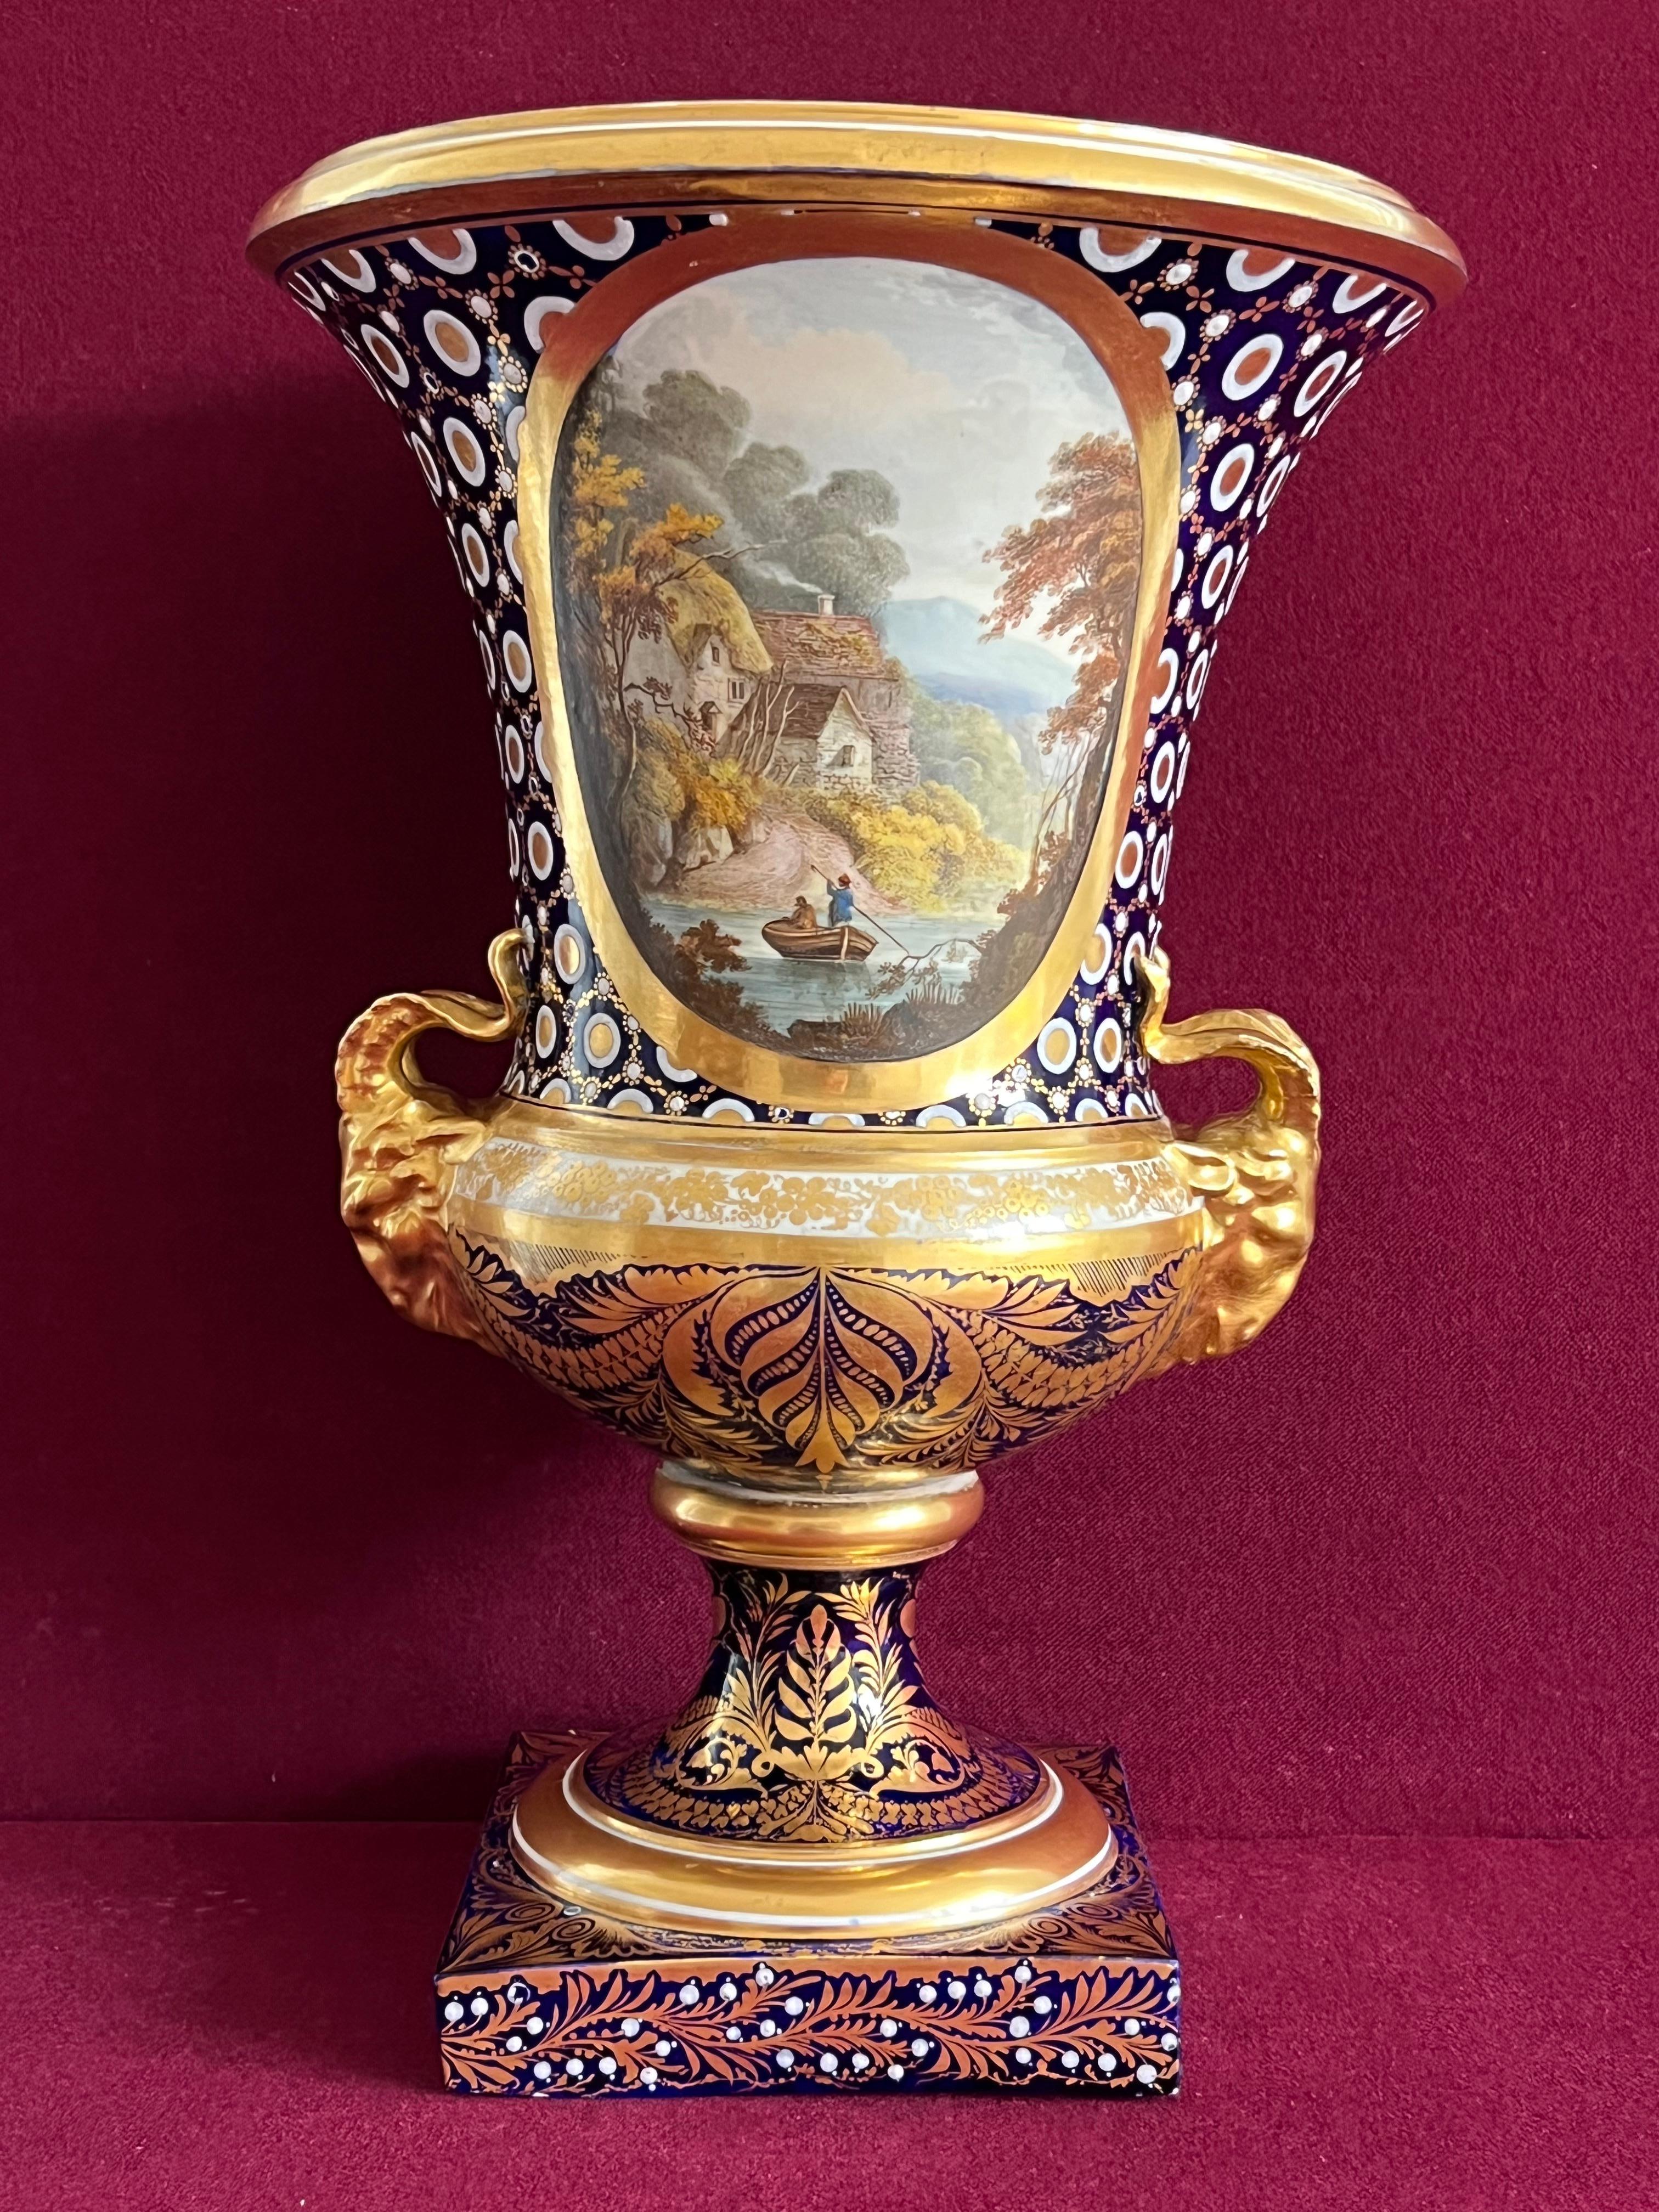 Grand vase Campana en porcelaine de Derby décoré par John Brewer vers 1810 - période Duesbury & Kean. Chaque côté du vase est finement peint d'un rondeau, l'un avec un paysage marin et l'autre avec une scène de rivière et une chaumière, avec des